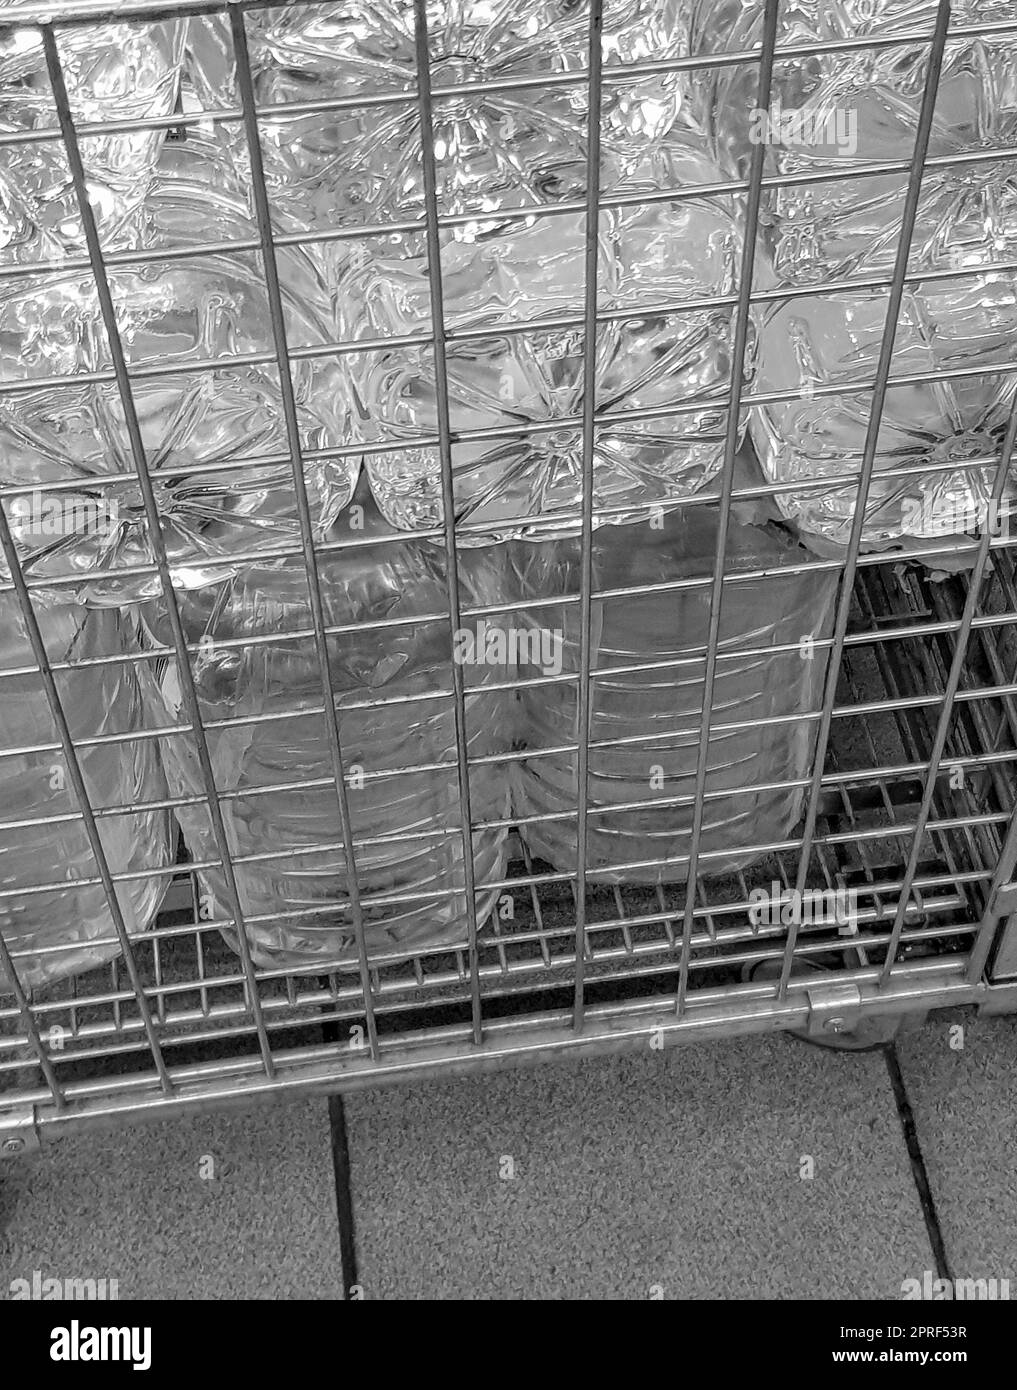 Stockage et transport de grandes bouteilles en plastique pour l'eau potable dans un récipient avec grille métallique, gros plan Banque D'Images